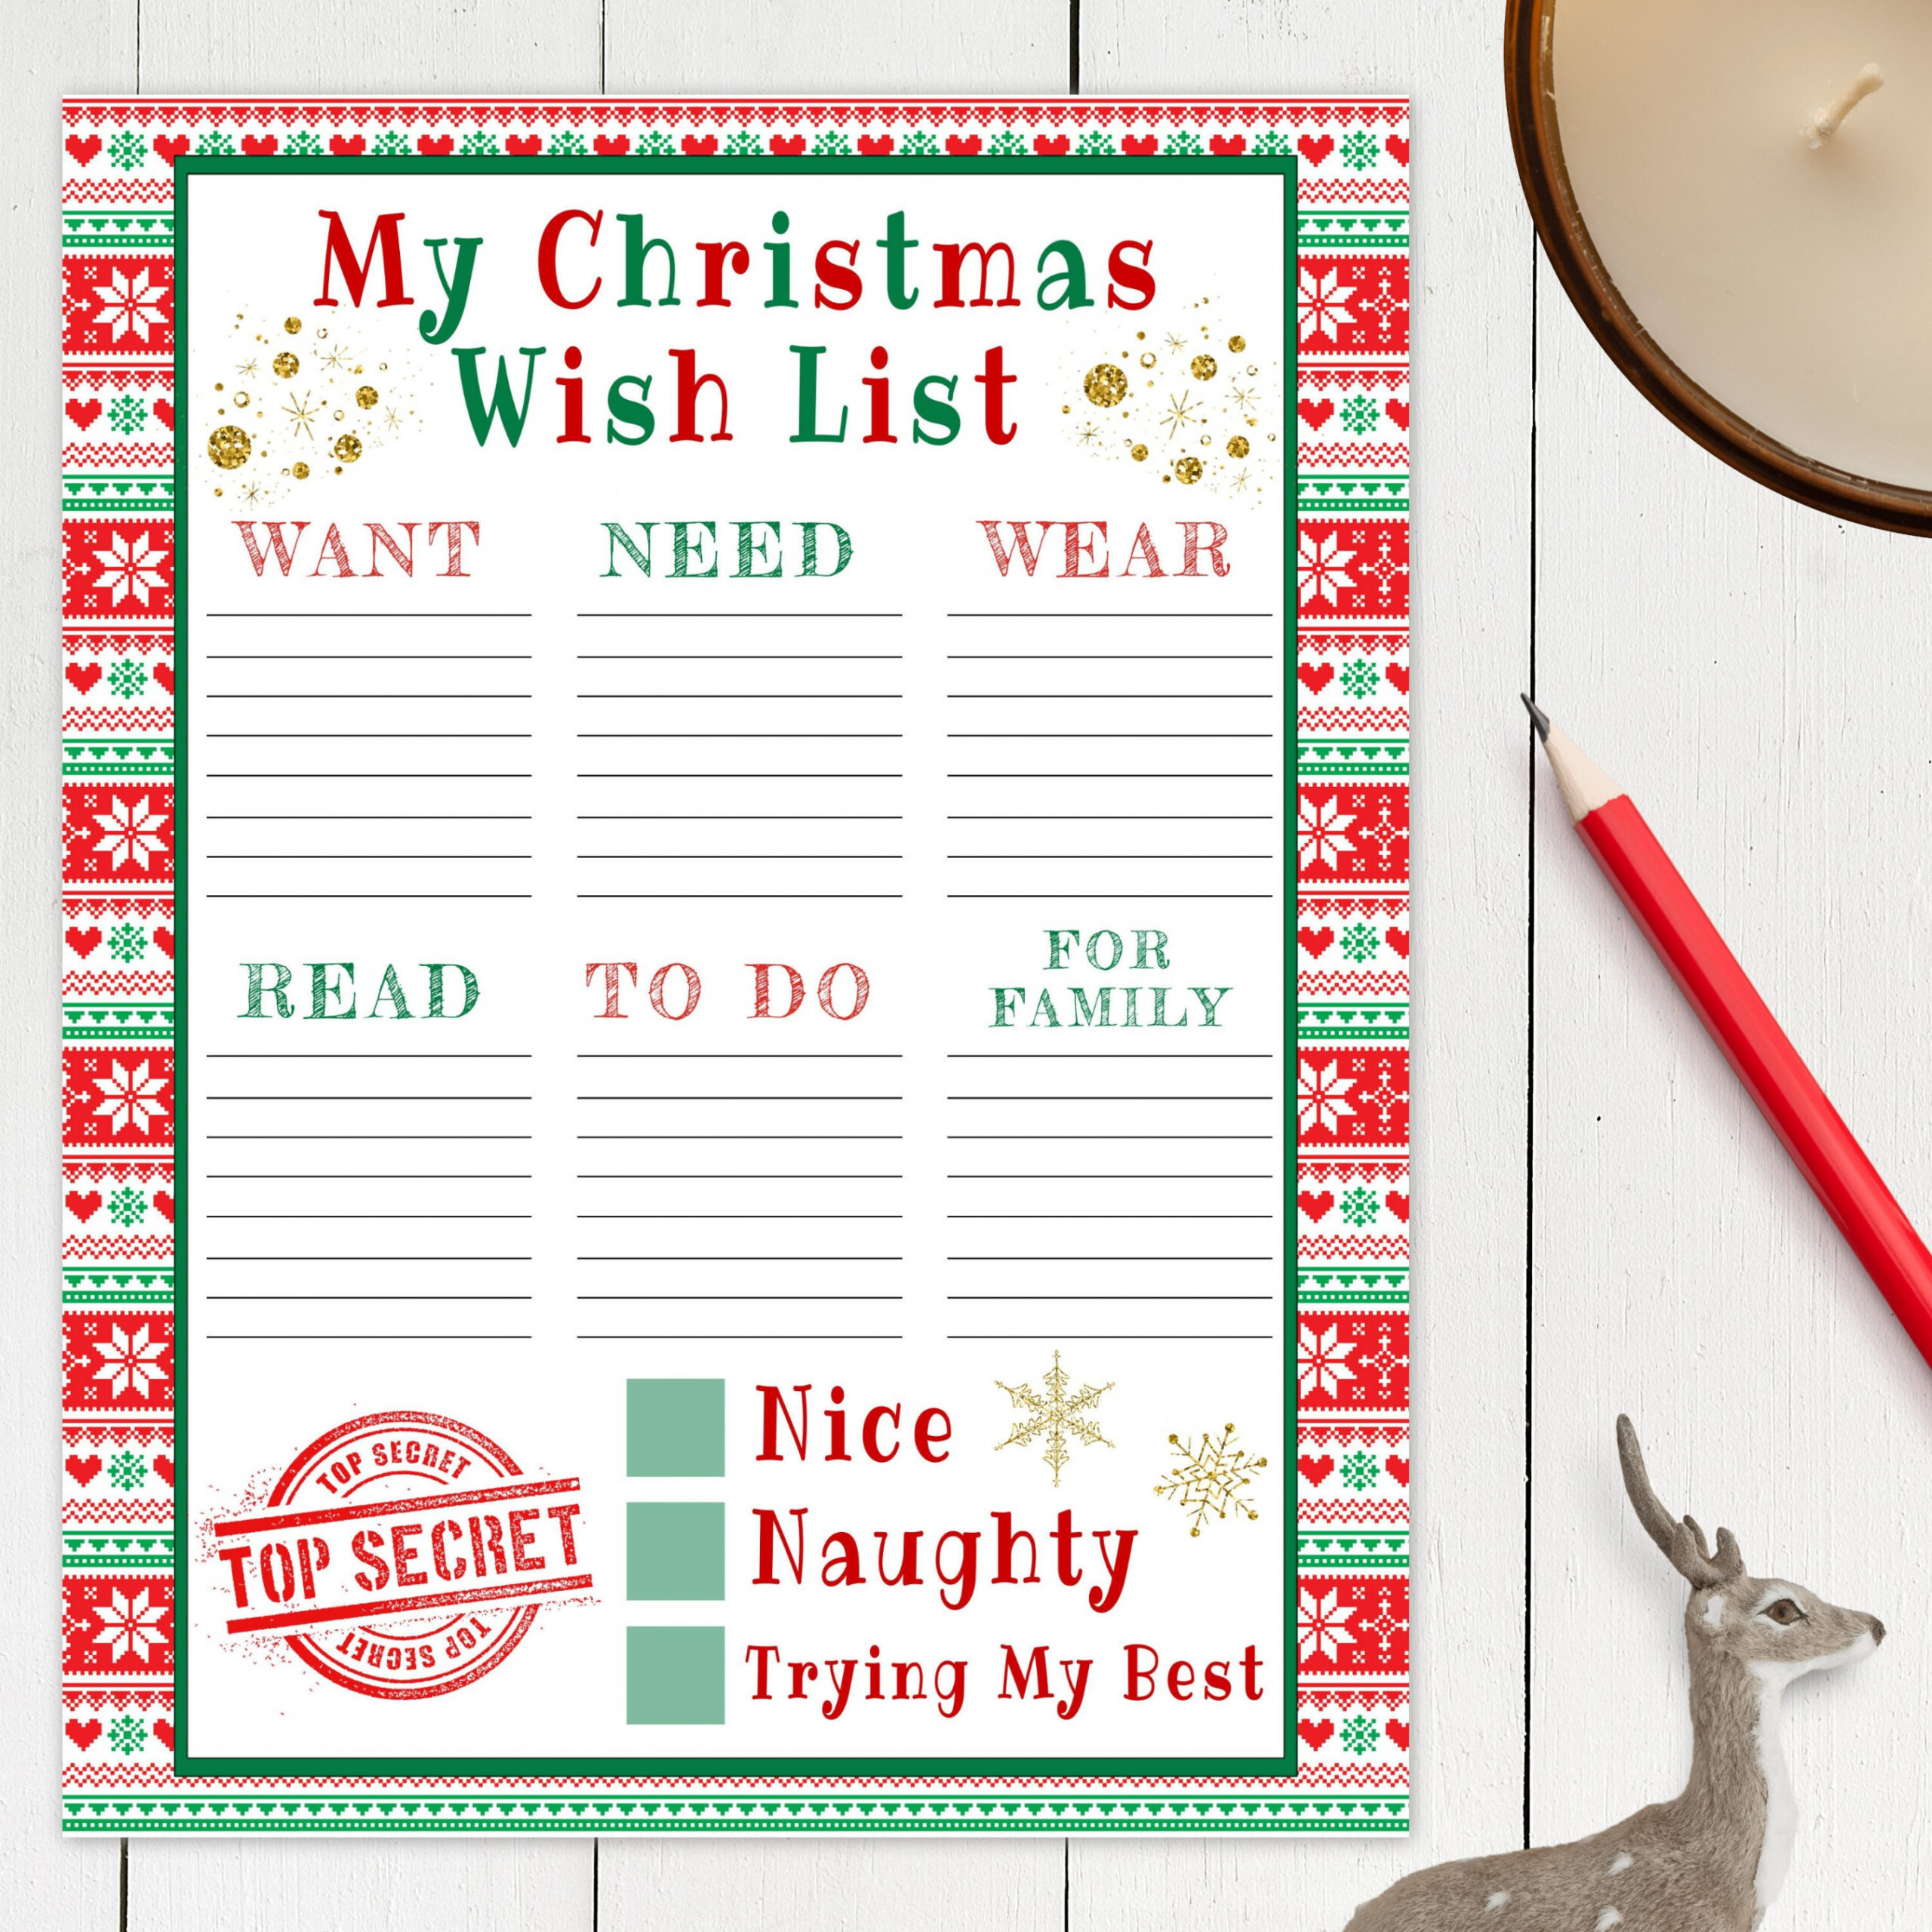 Christmas Wish List Free Printable - Printable - Christmas Wish List Printable Template for Kids Editable - Etsy